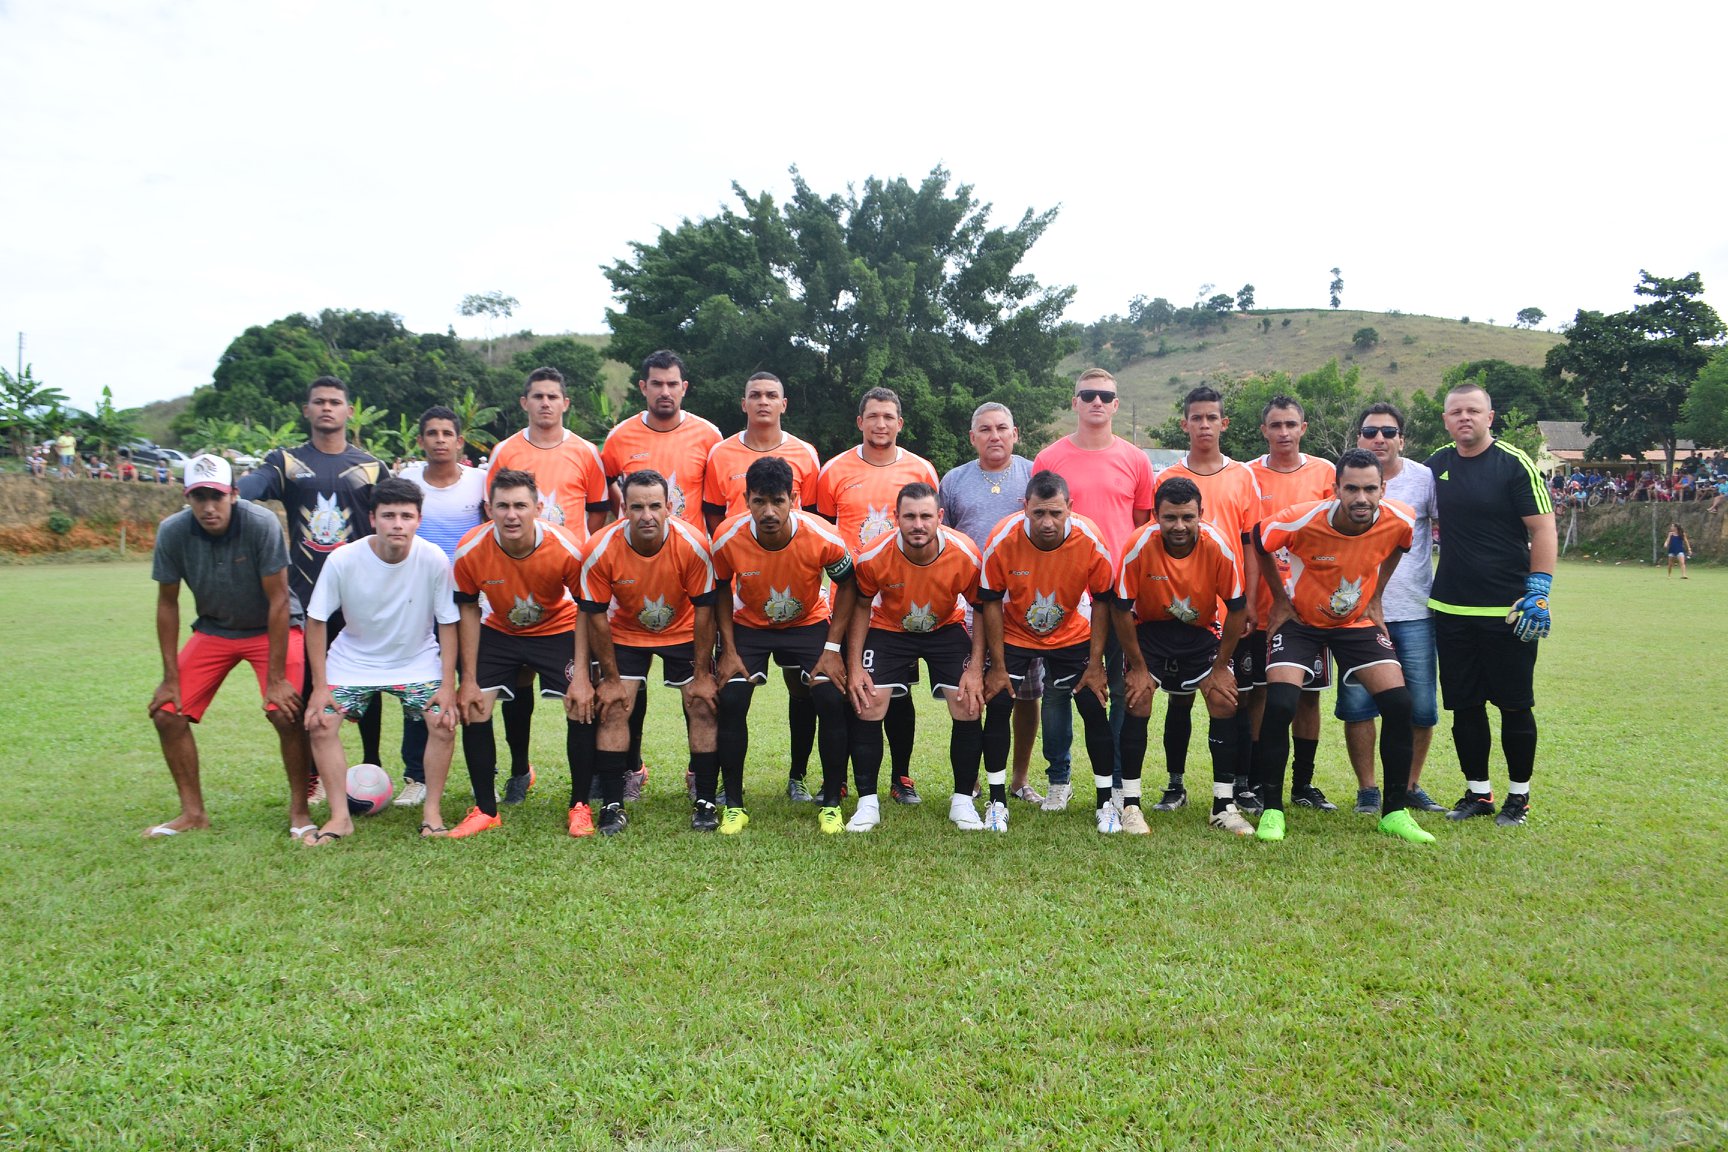 A equipe do Praça Rica (Titulares) vice-campeã